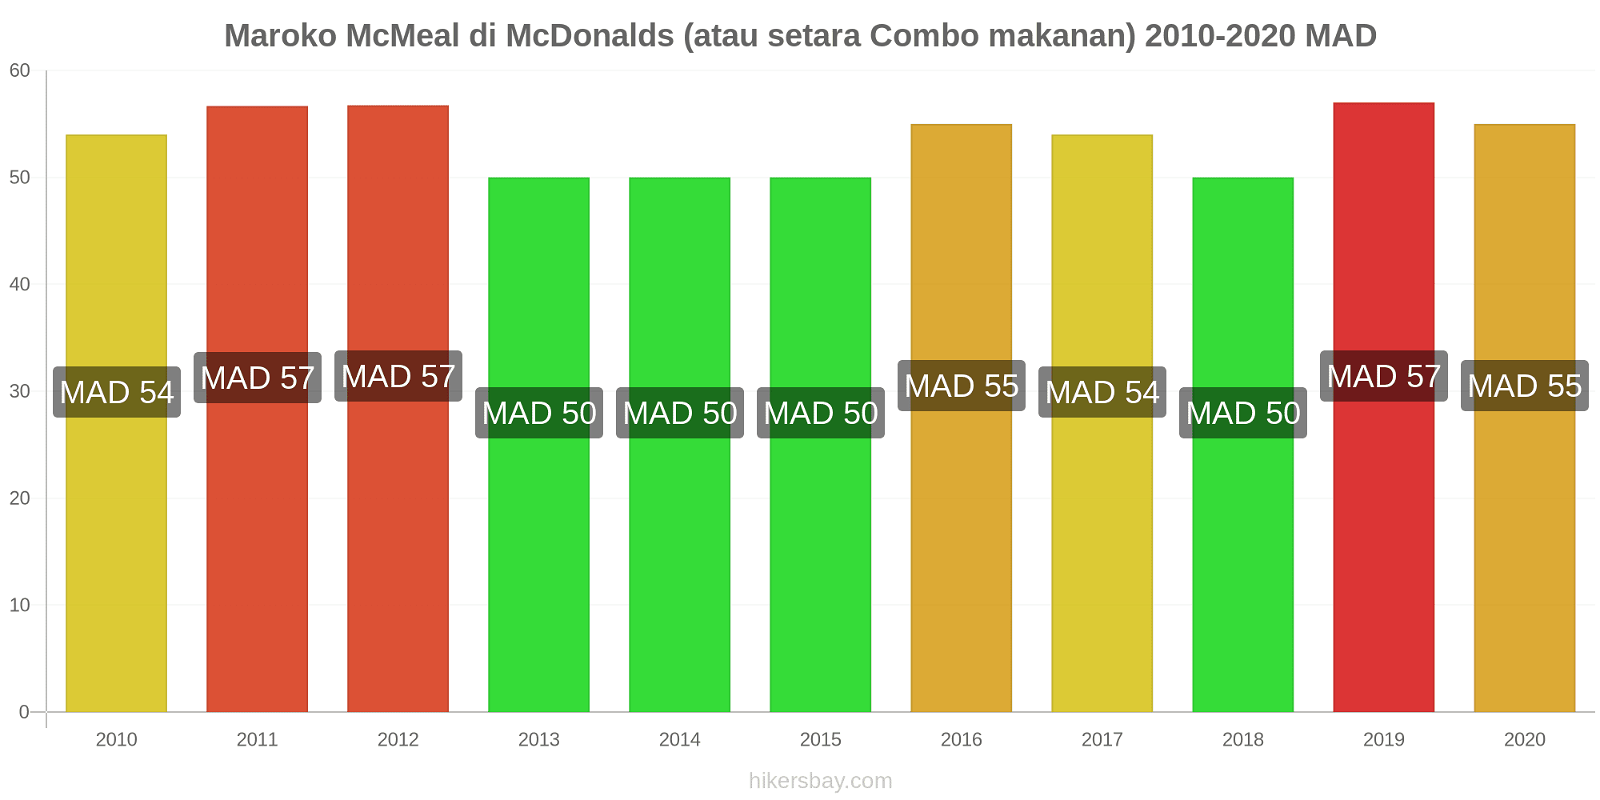 Maroko perubahan harga McMeal di McDonalds (atau setara Combo makanan) hikersbay.com